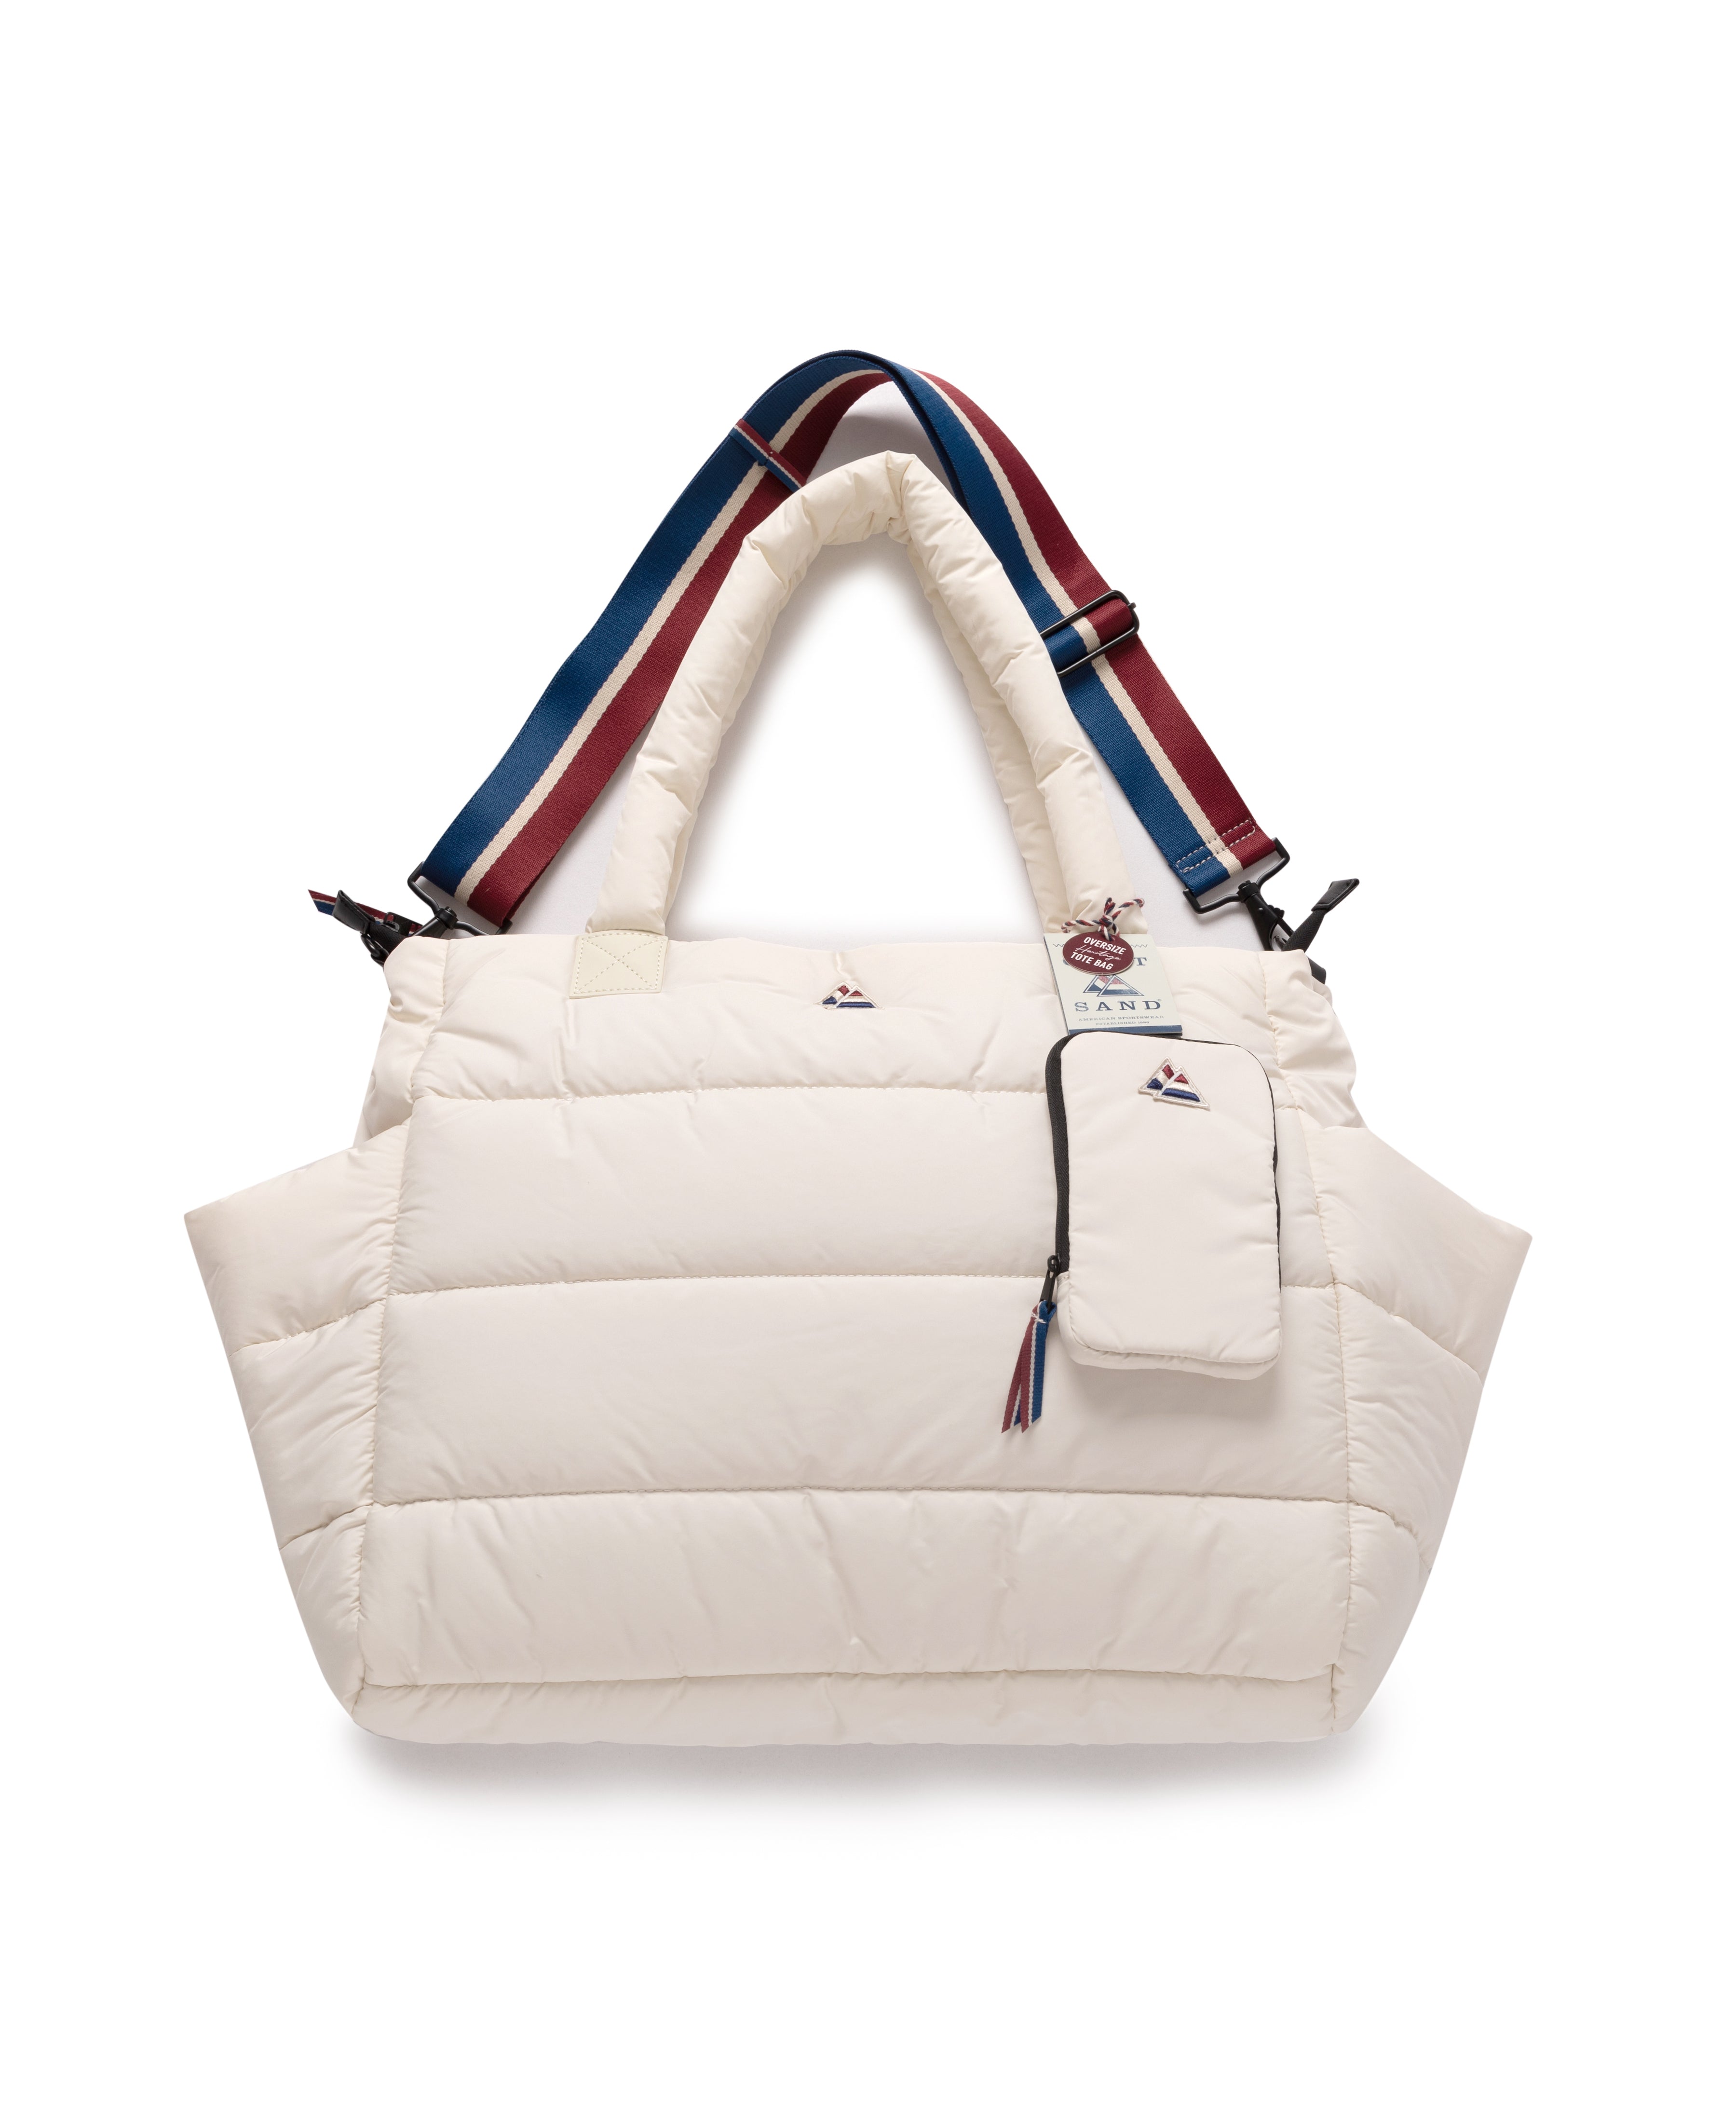 Oversize Super Tote Bag in Winter White